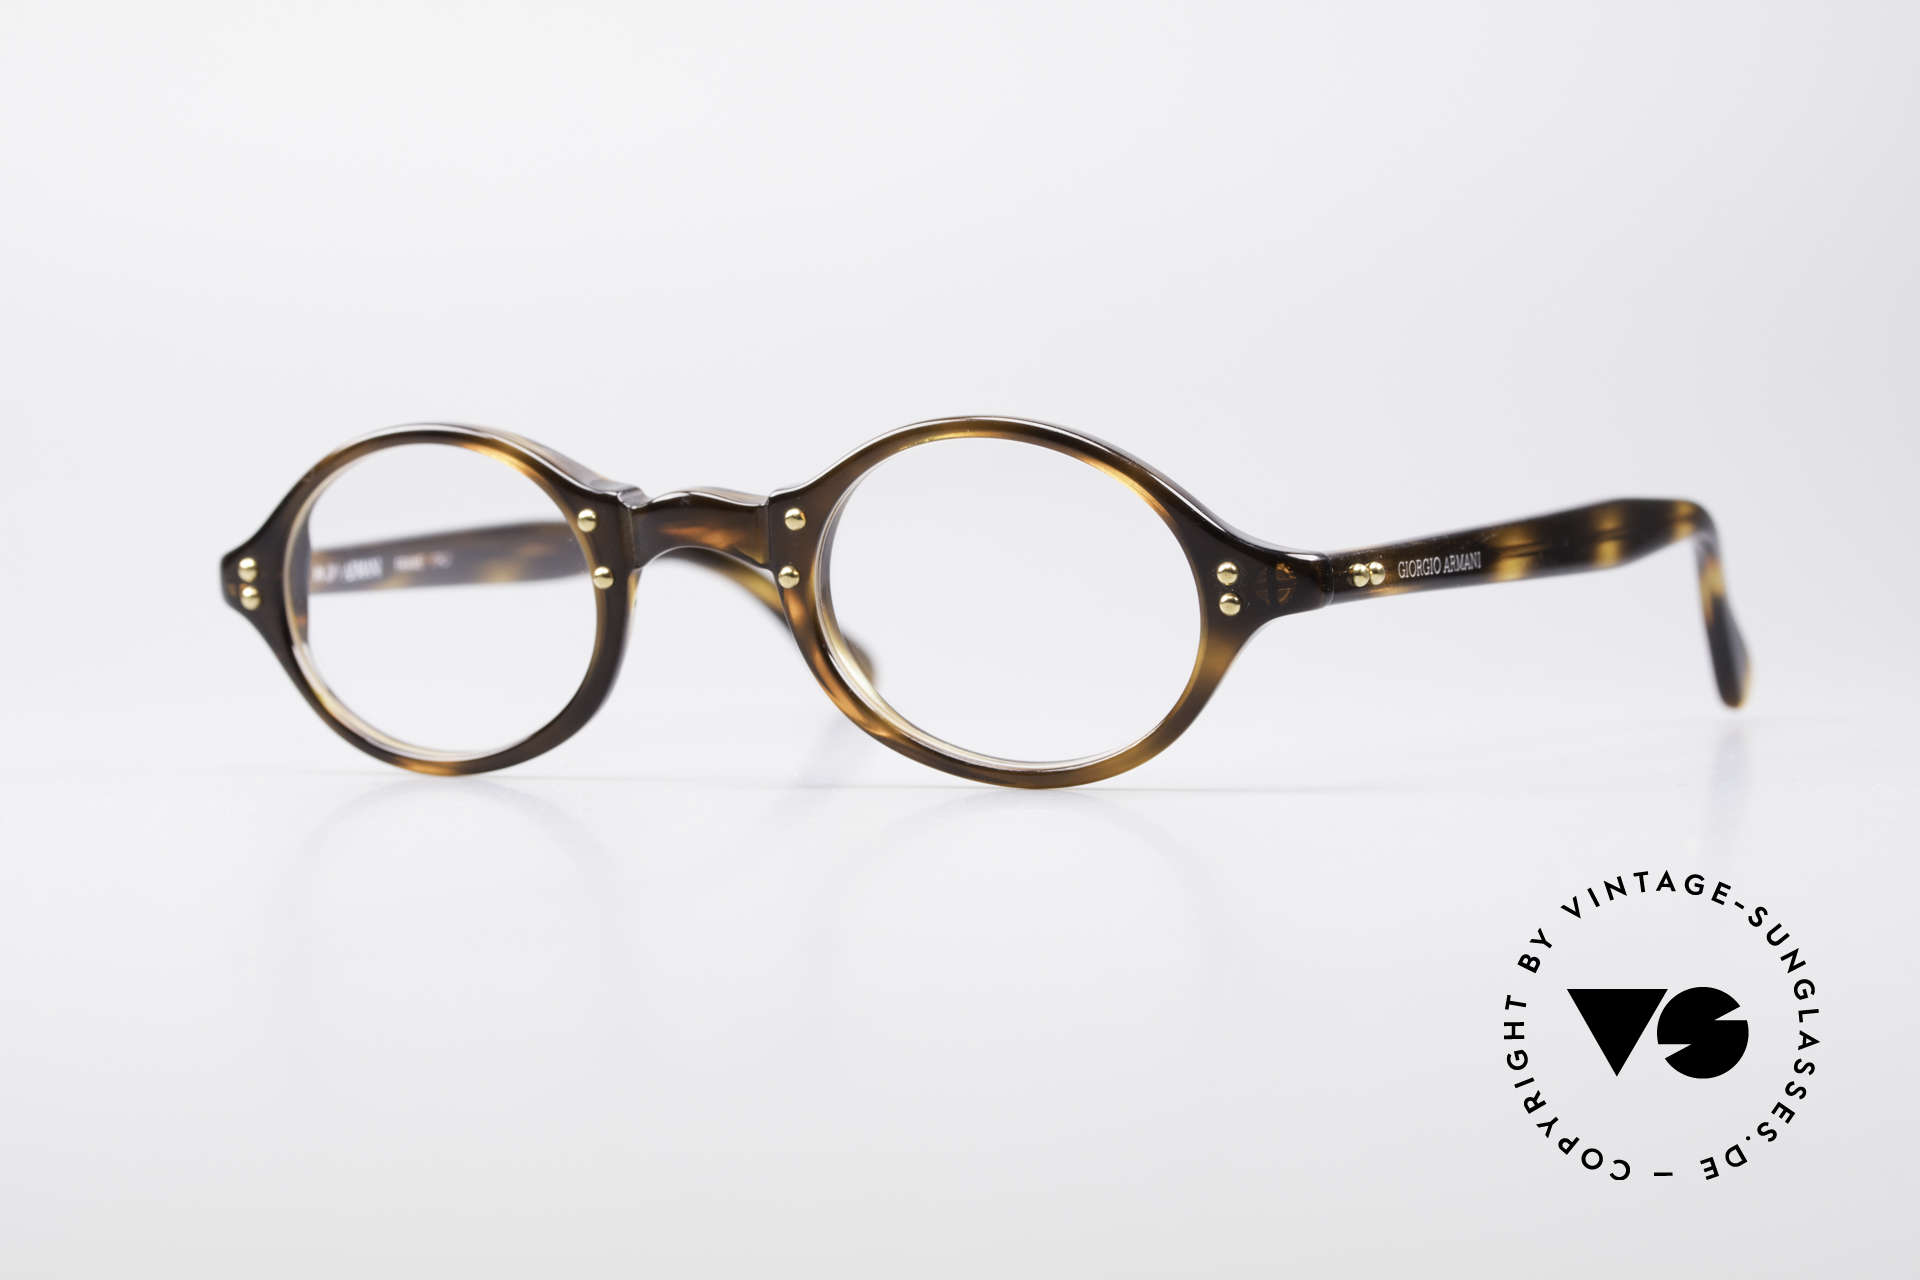 armani vintage glasses